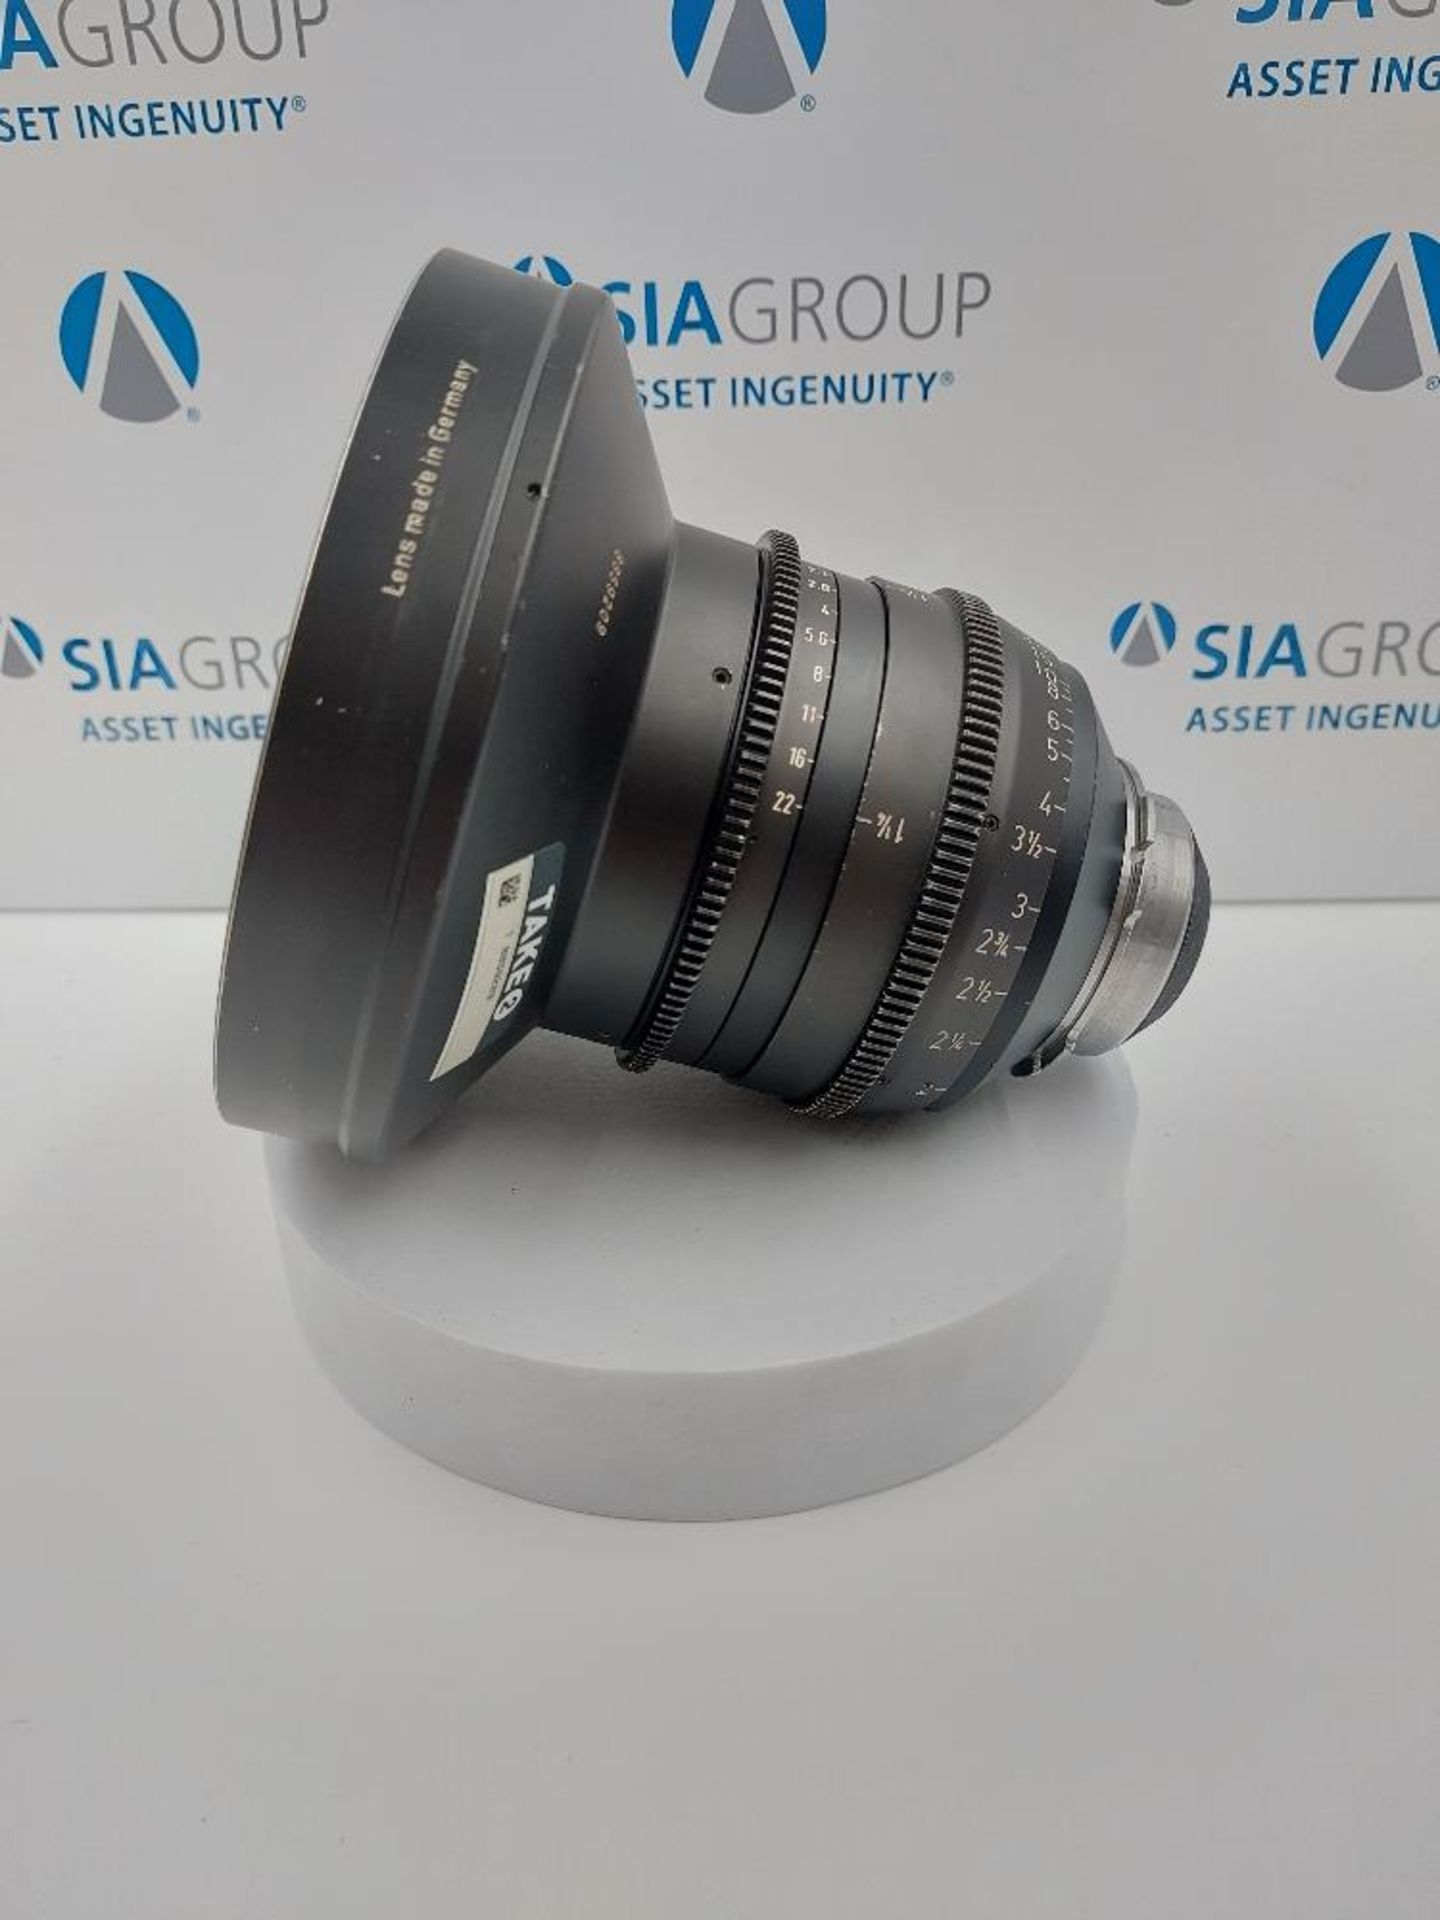 ARRI 10mm T2.1 S35 Ultra Prime PL Mount Lens - Image 4 of 7